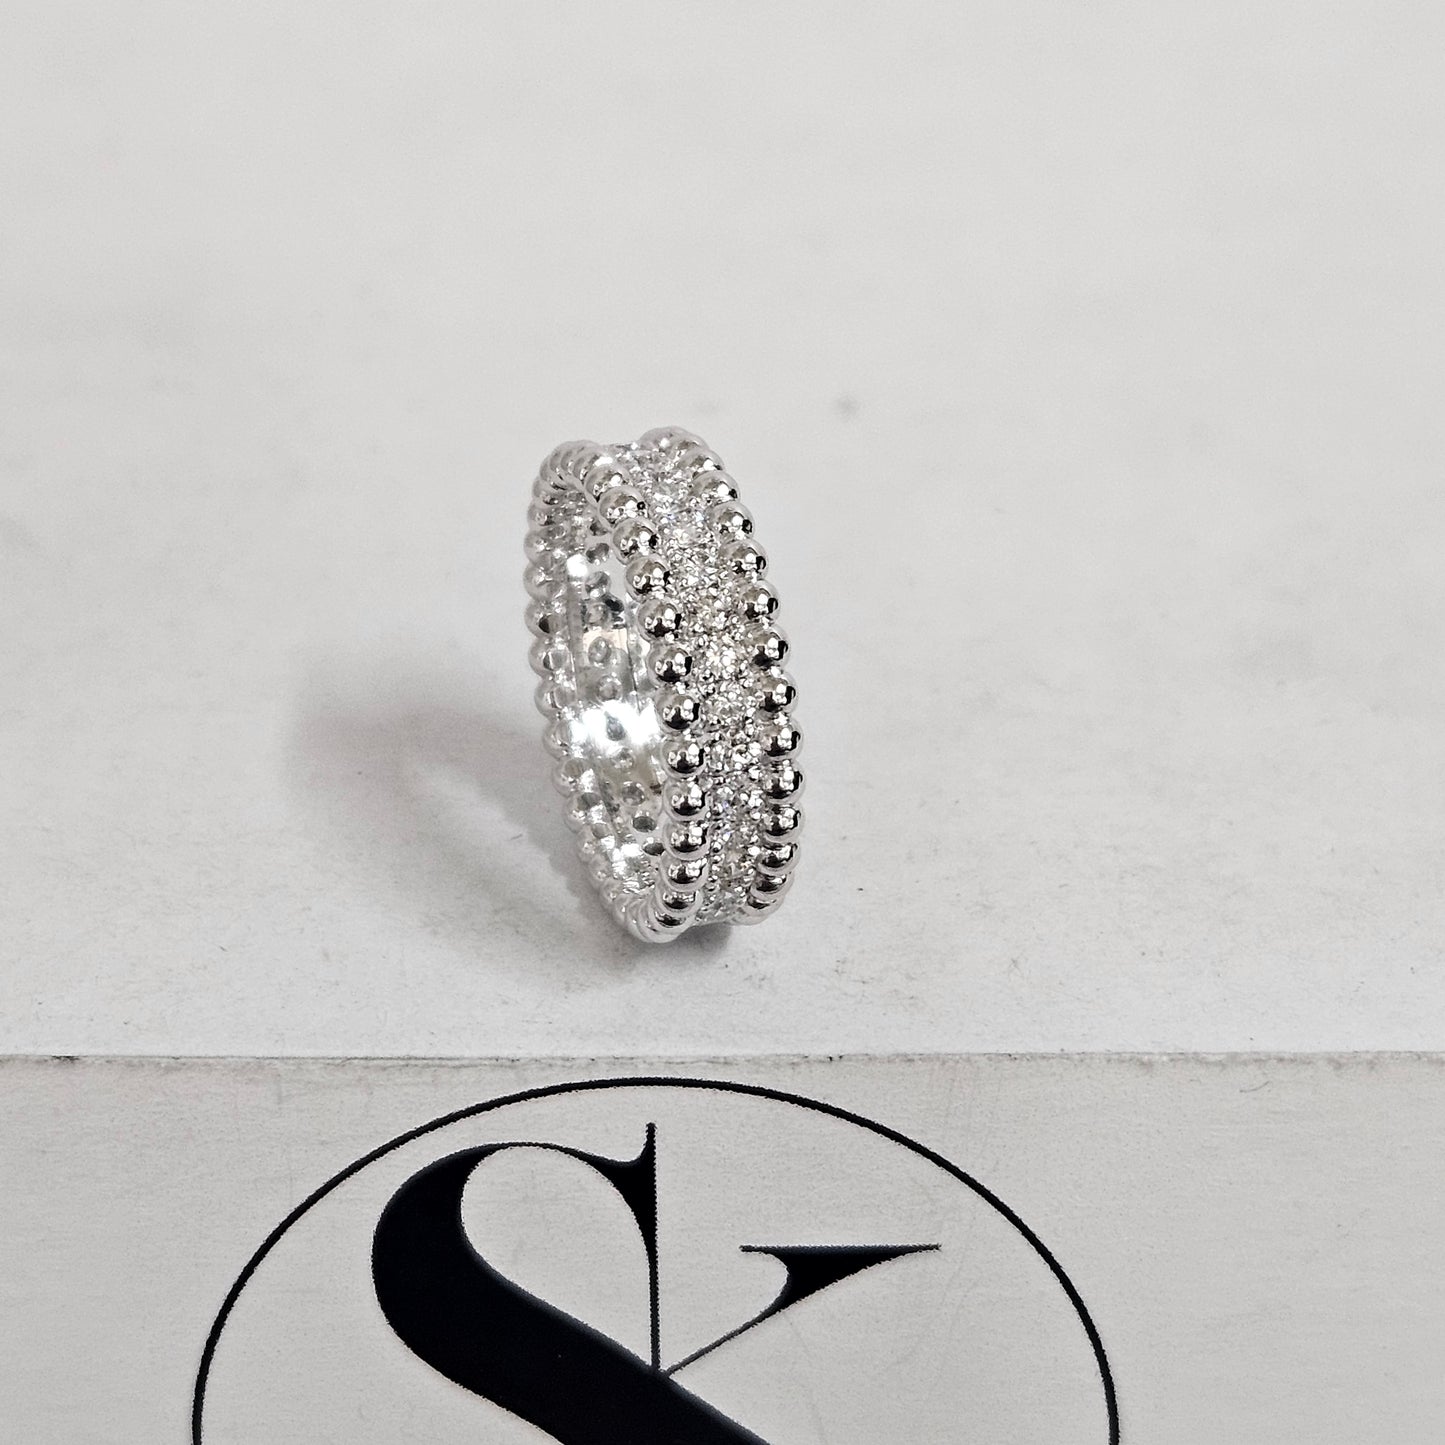 Sean's handmade custom order (Full Eternity Diamond Ring)